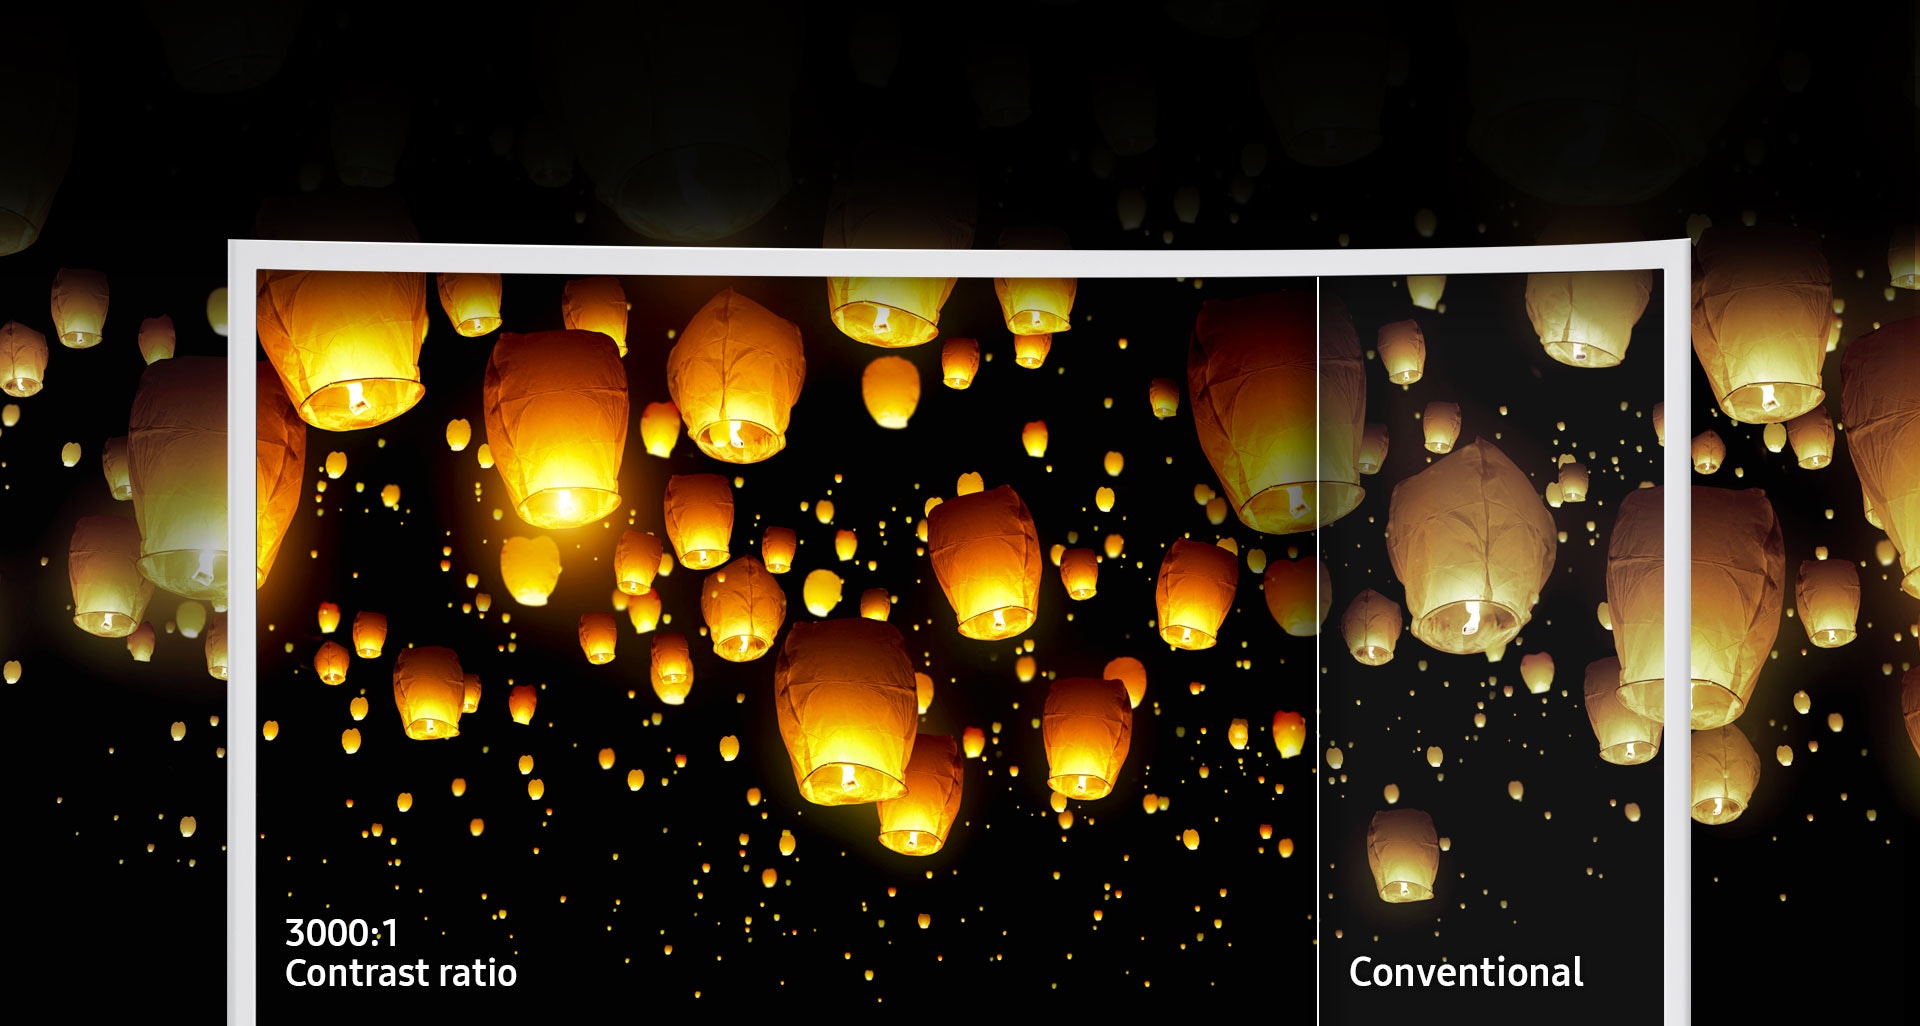 Calidad de imagen superior con la avanzada tecnología de pantalla de Samsung